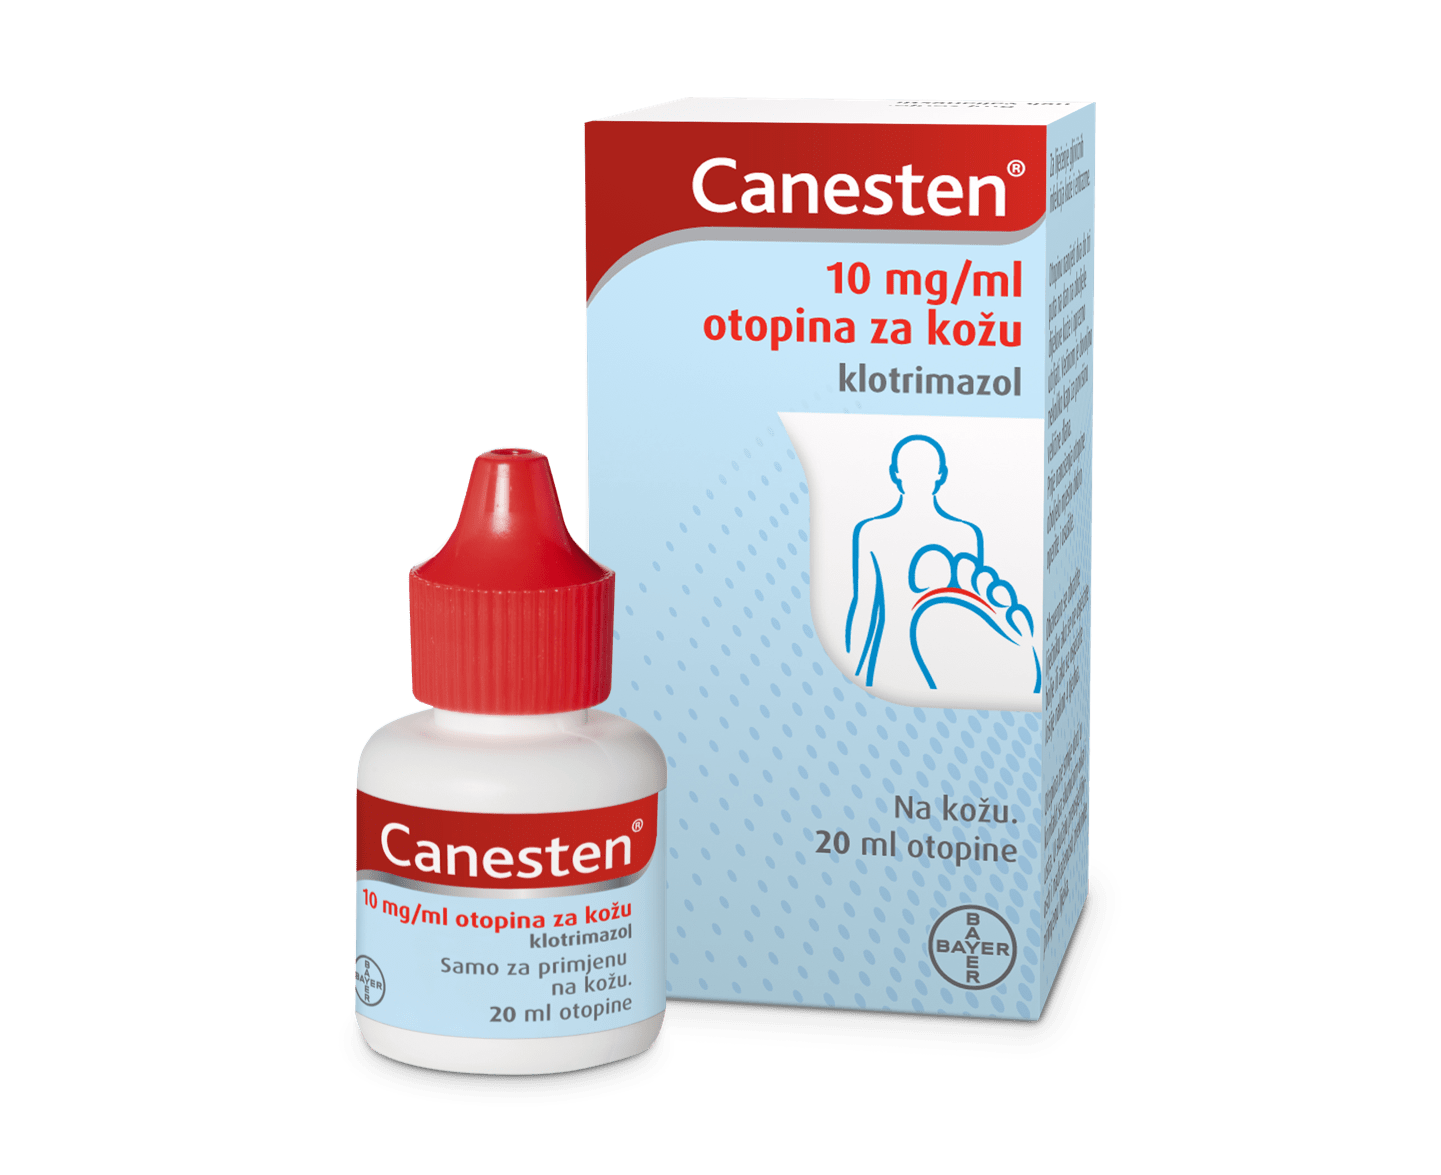 Canesten® 10mg/ml otopina za kožu